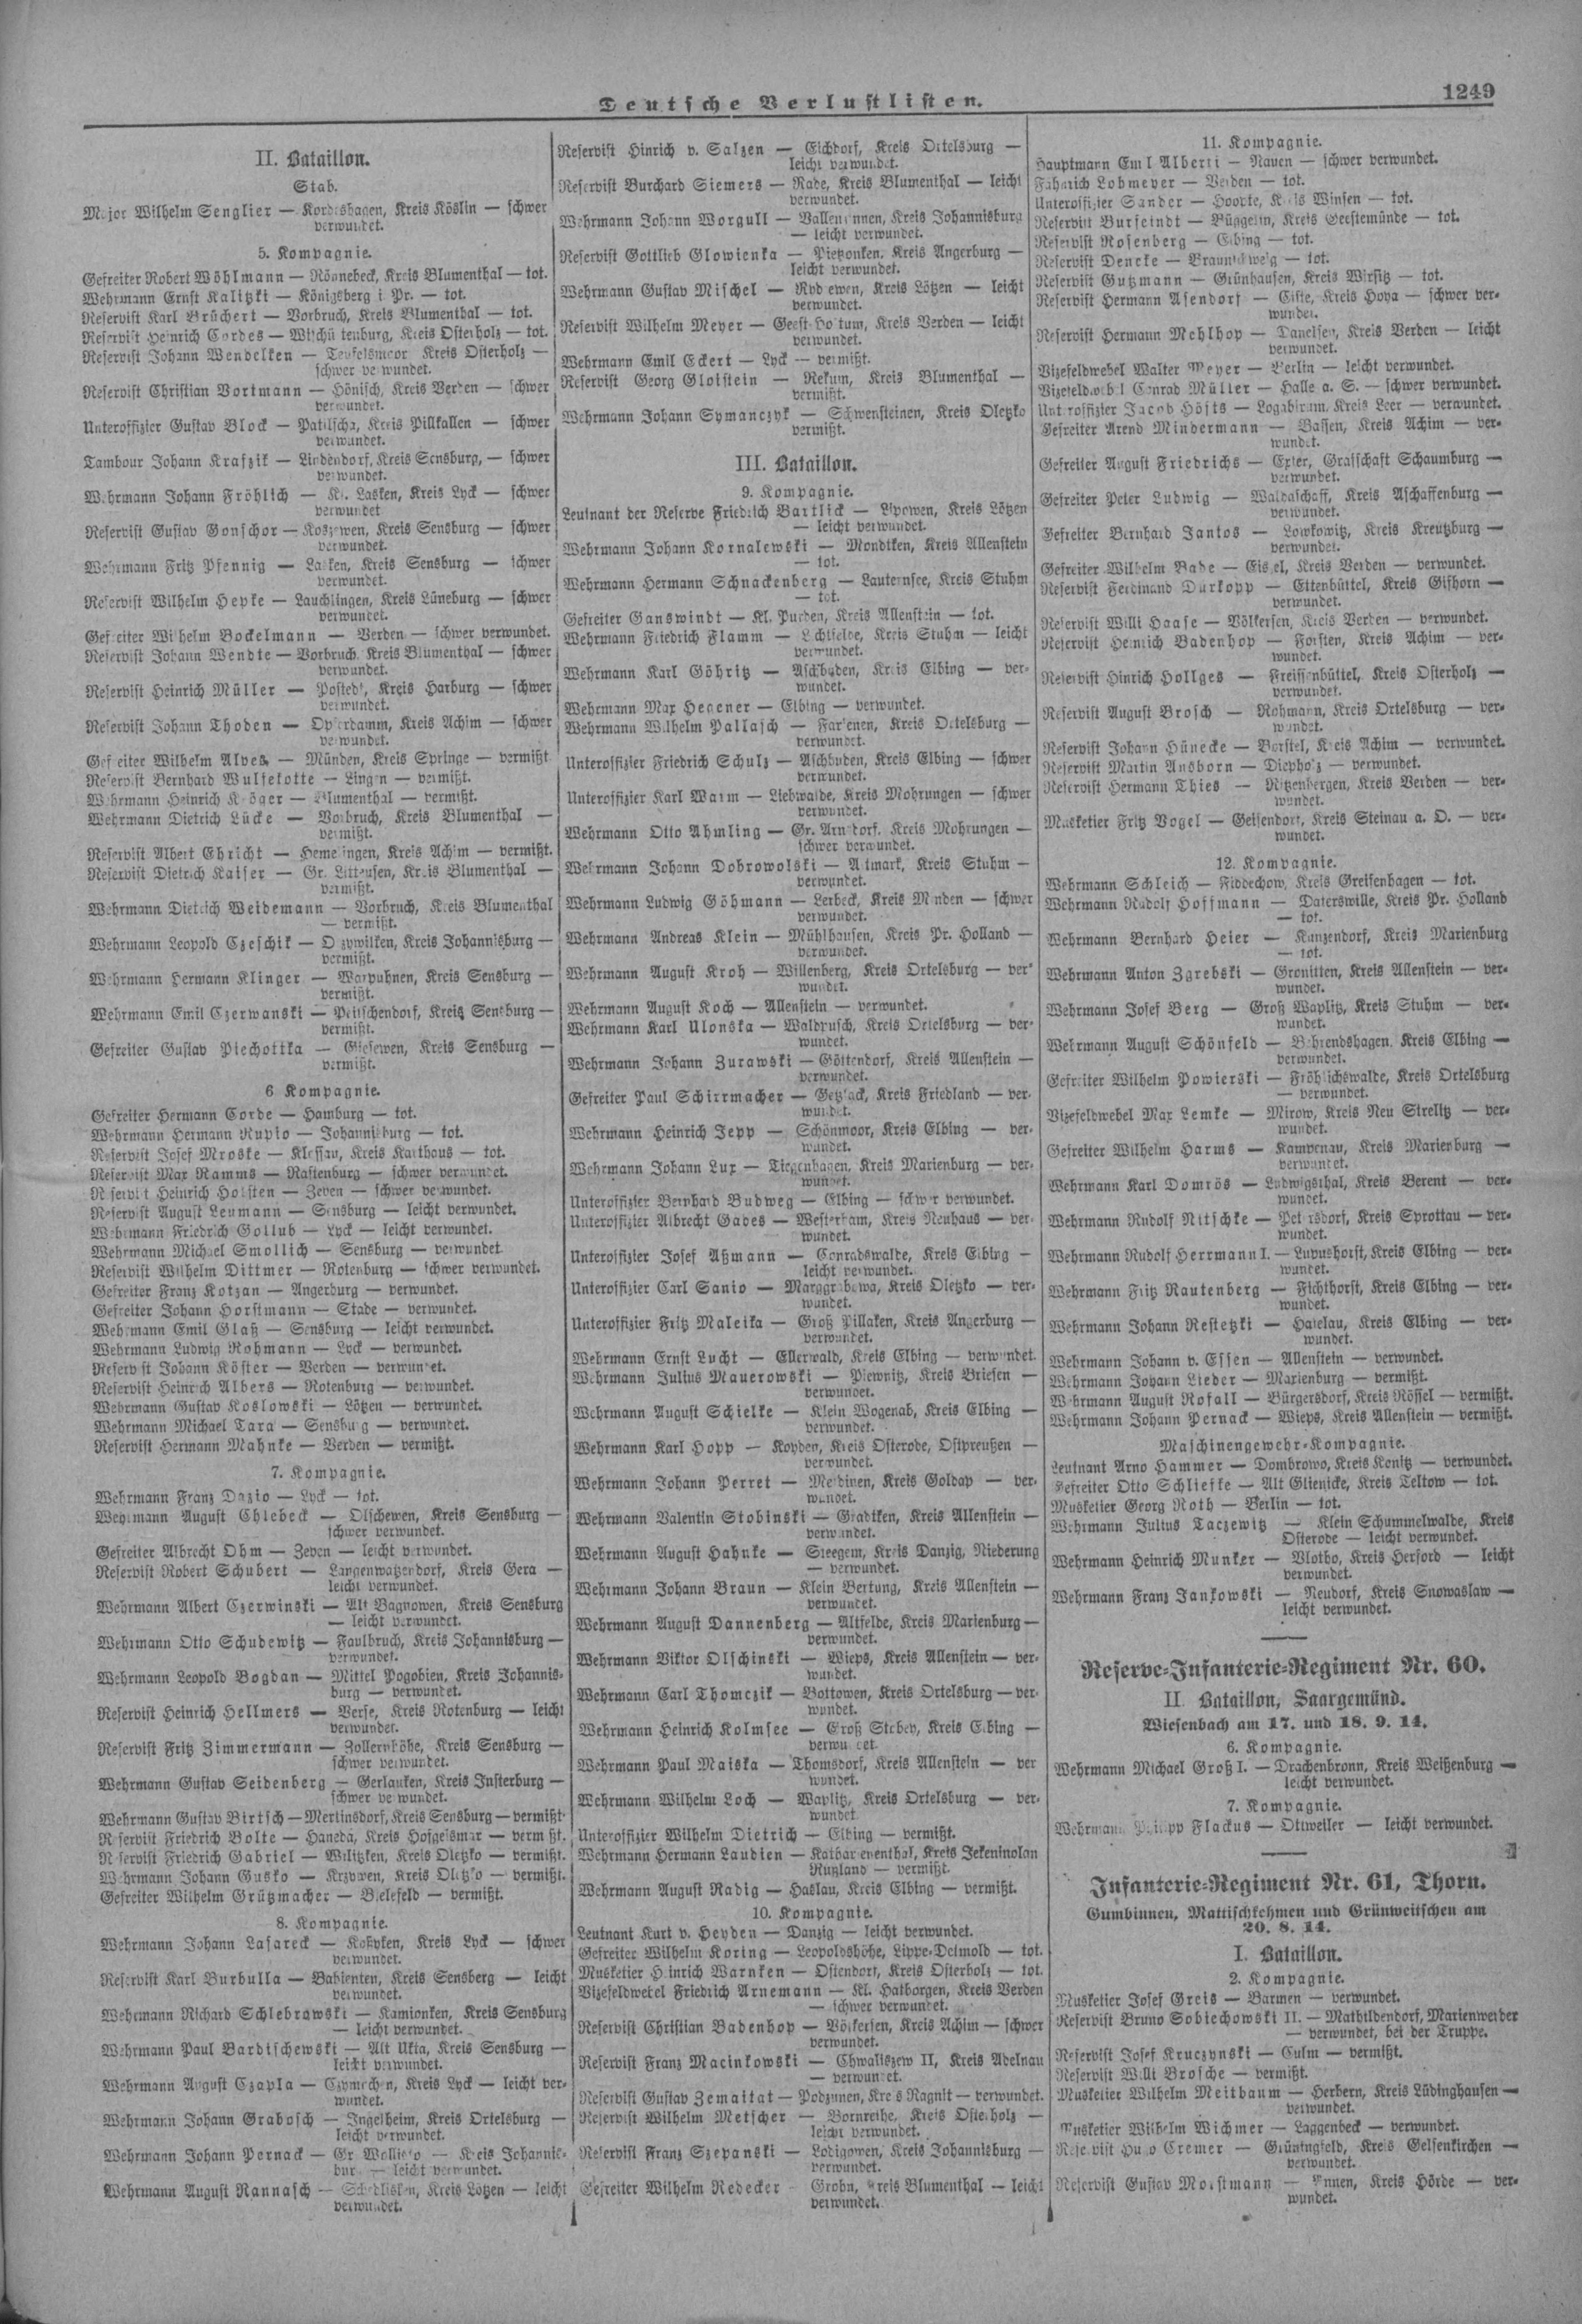 Verlustlisten 1. Weltkrieg, page 1249: Bardischewski Paul (Alt Ukta ...